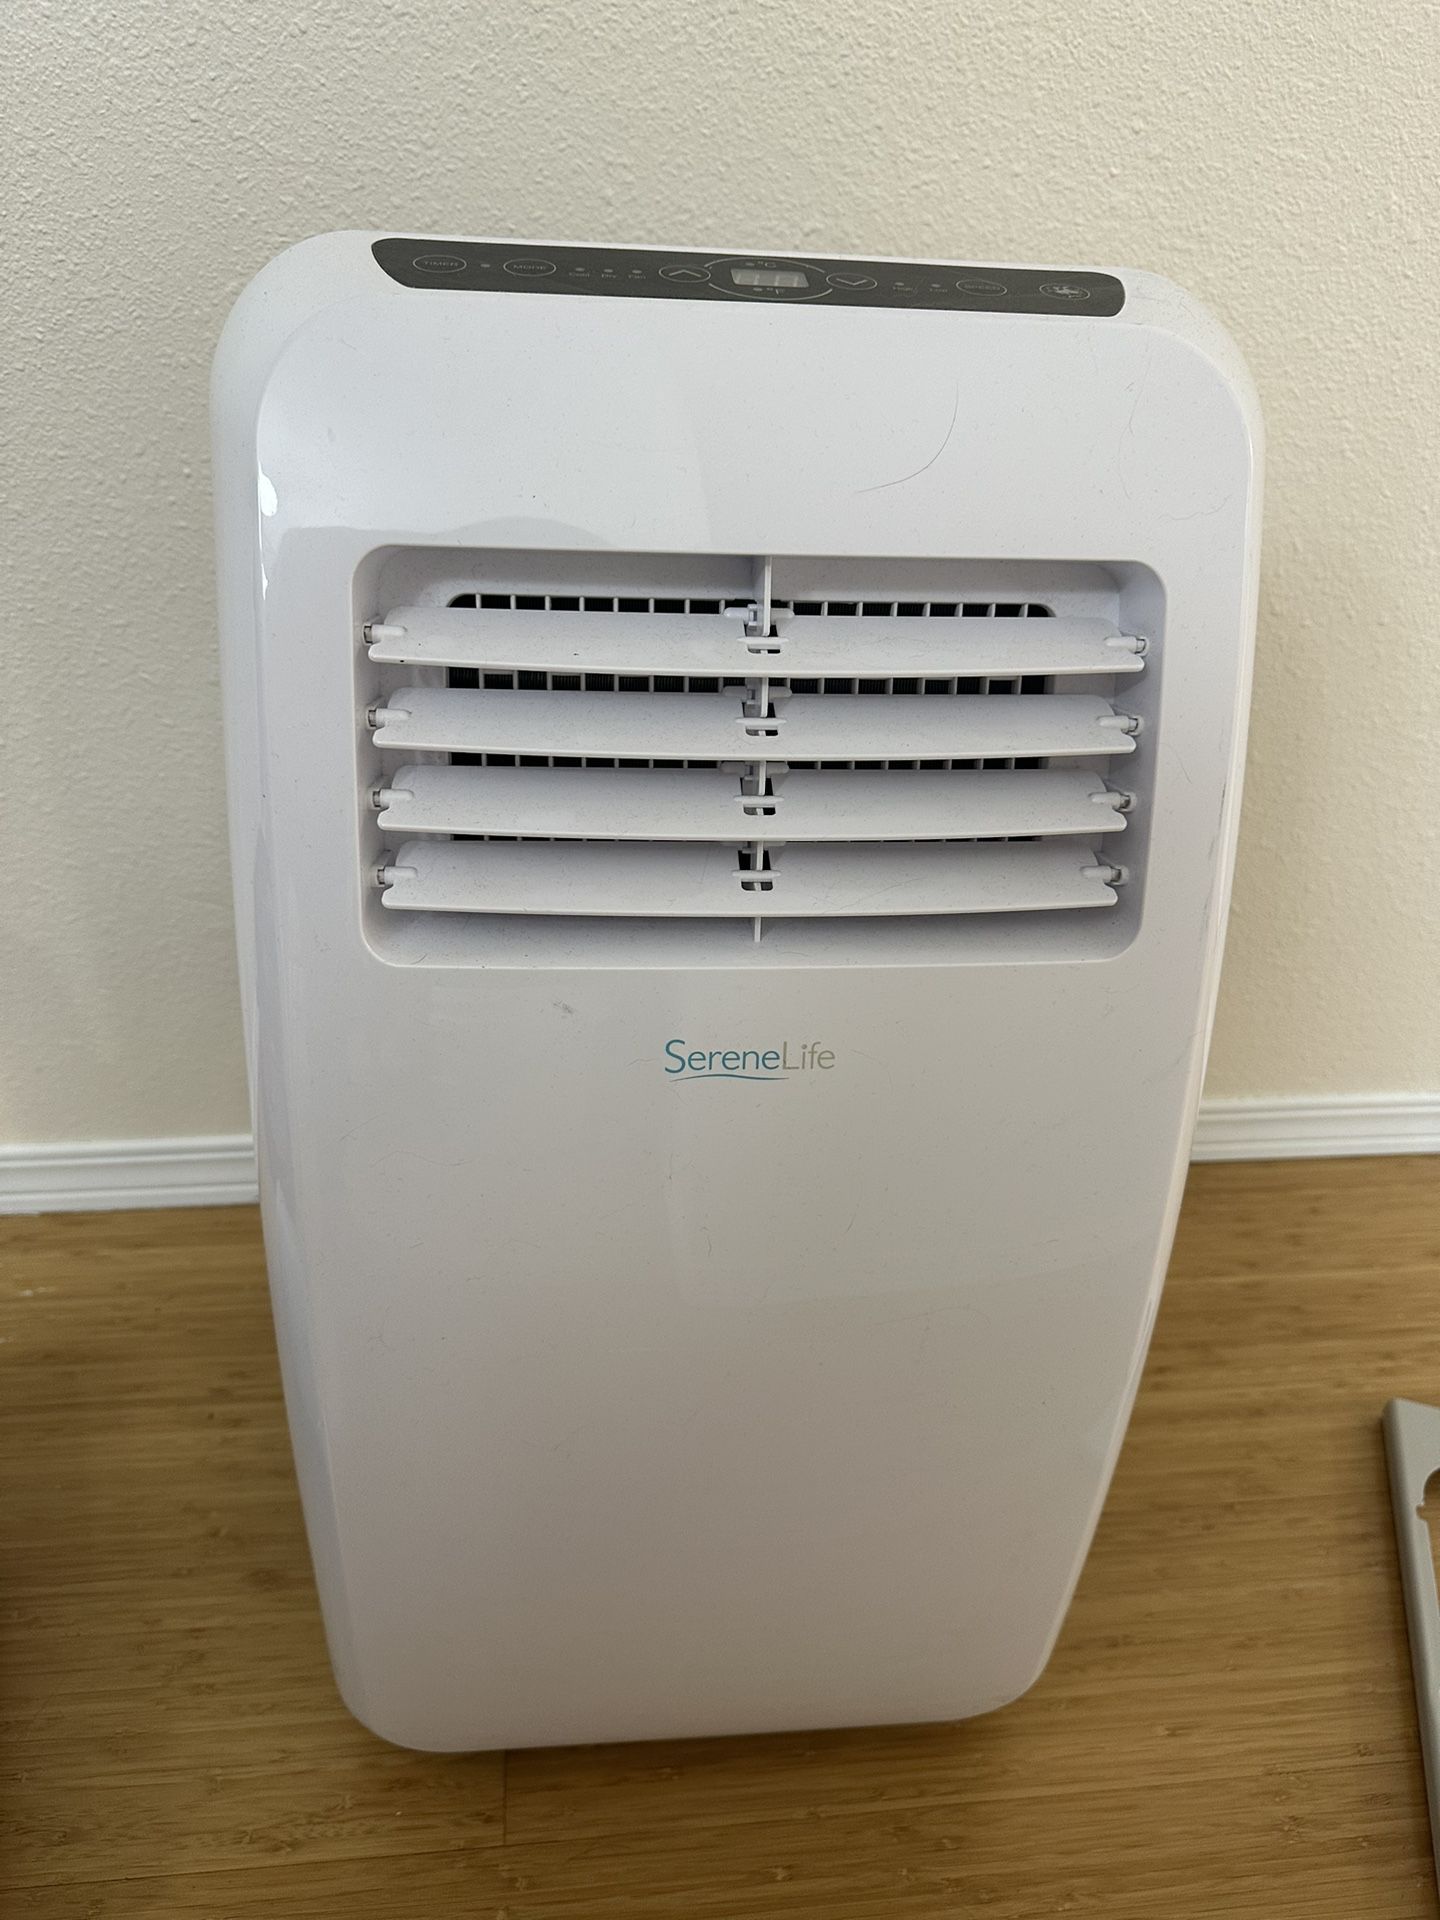 SereneLife Portable Air Conditioner + Dehumidifier 